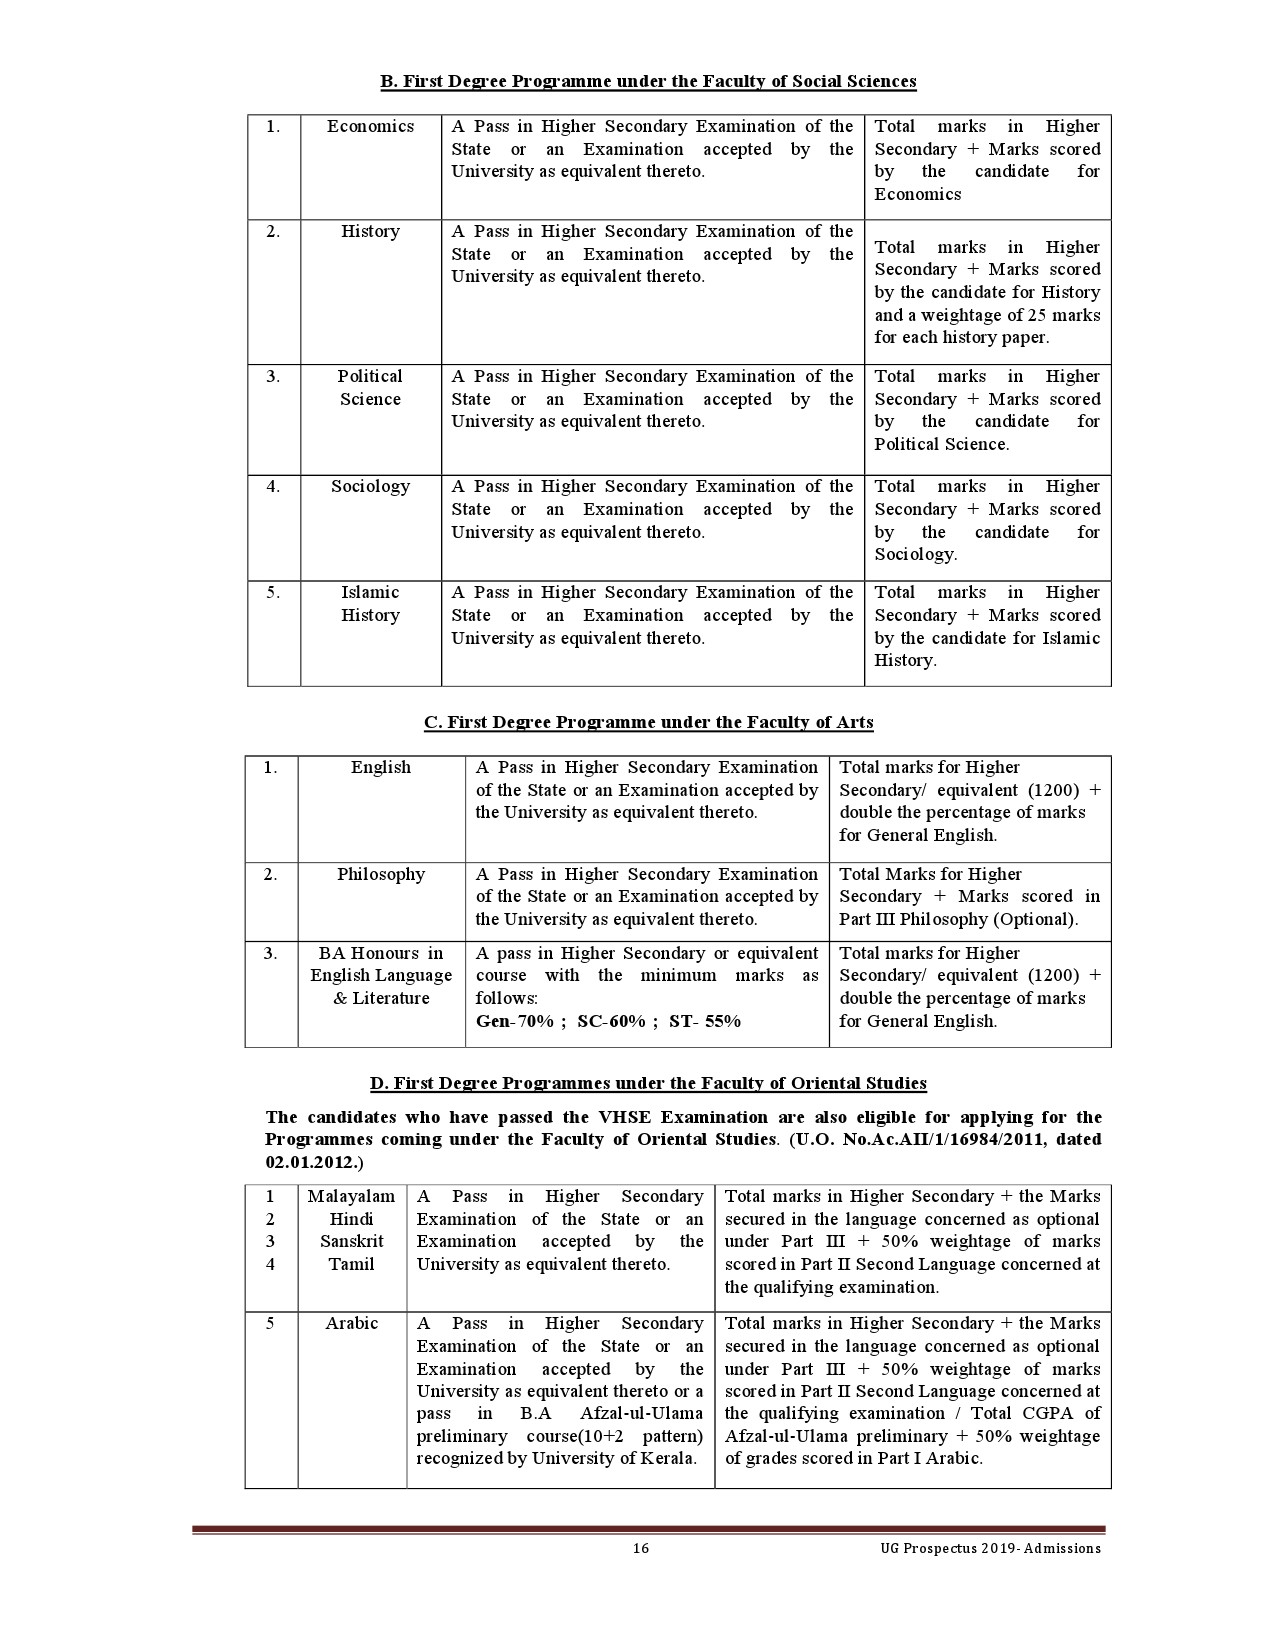 Kerala University UG Admission Prospectus 2019 - Notification Image 16